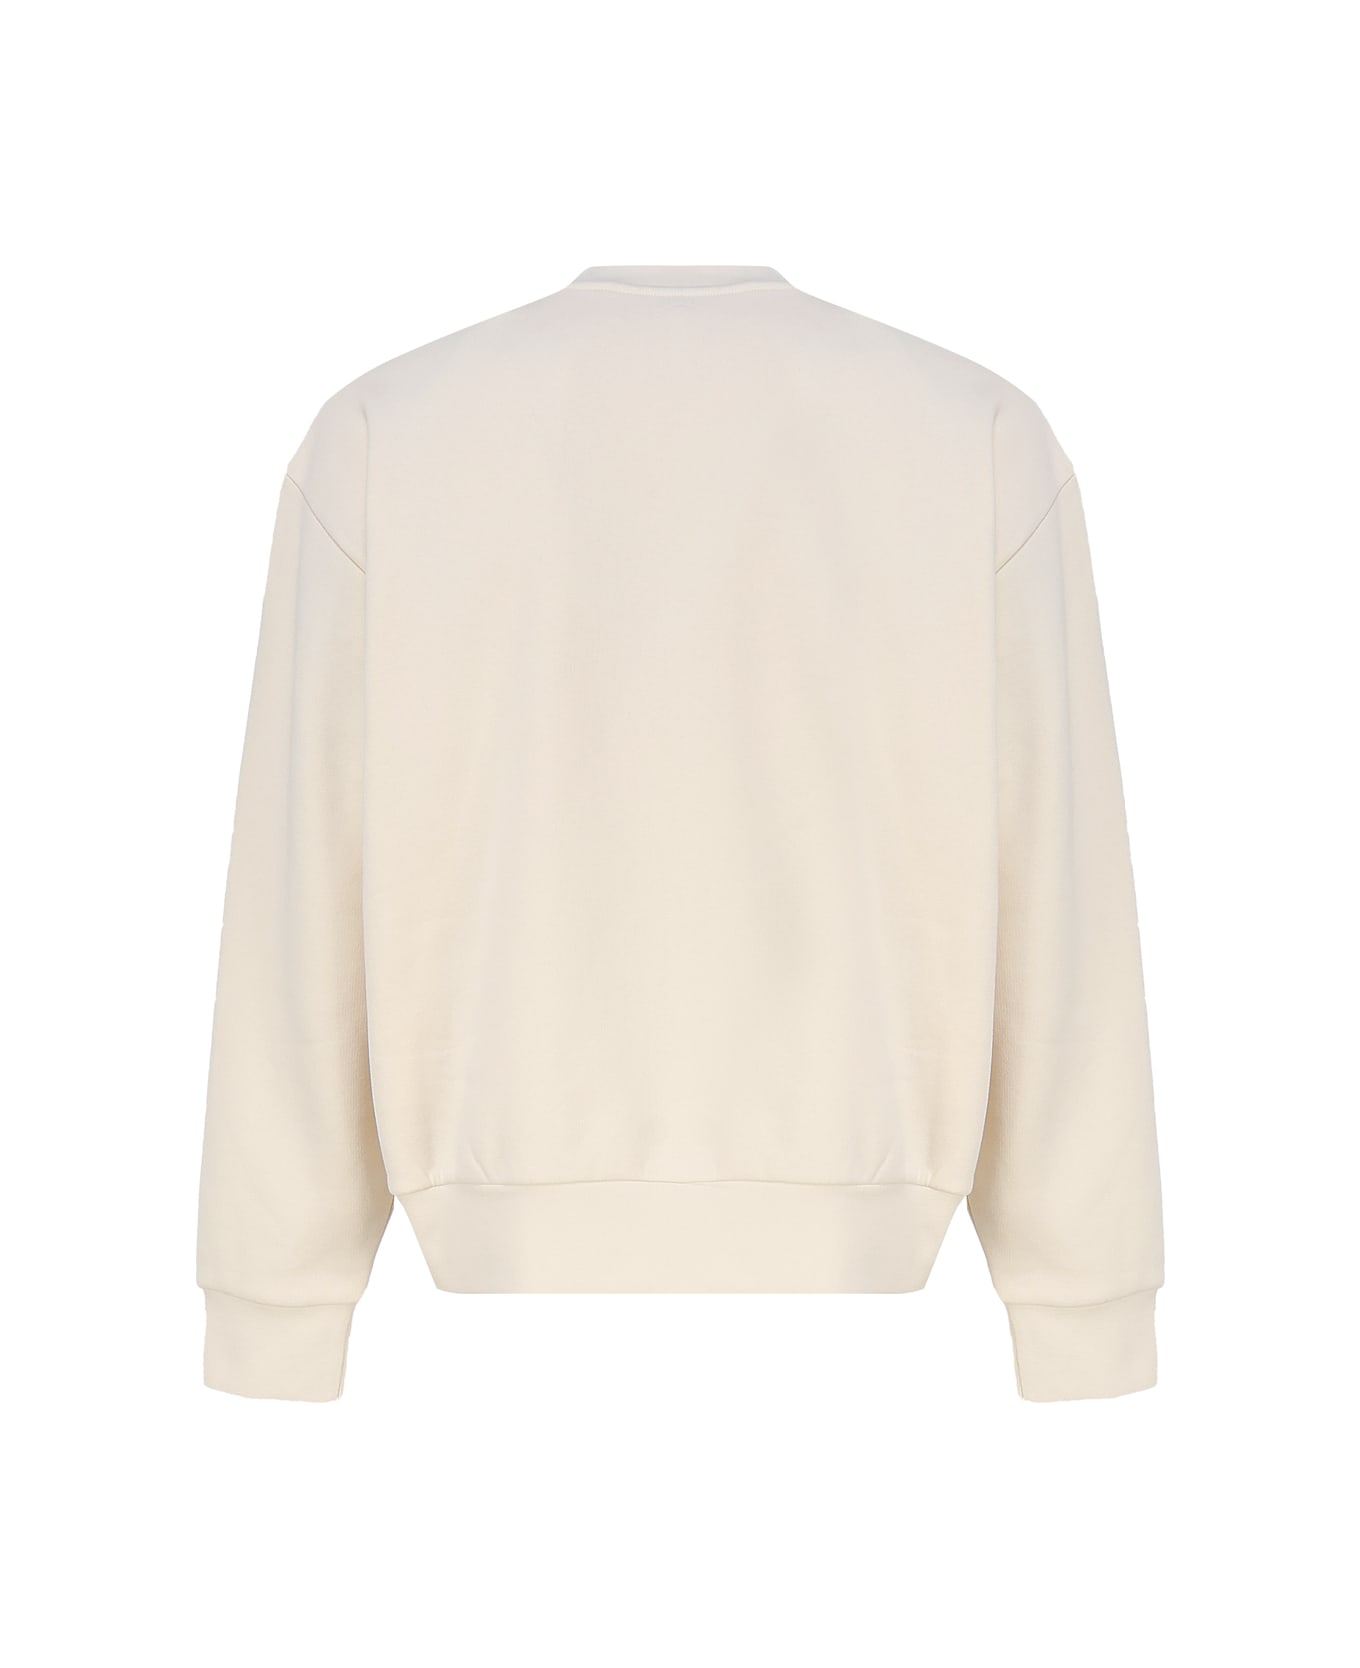 Moncler Genius Logoed Sweatshirt - White